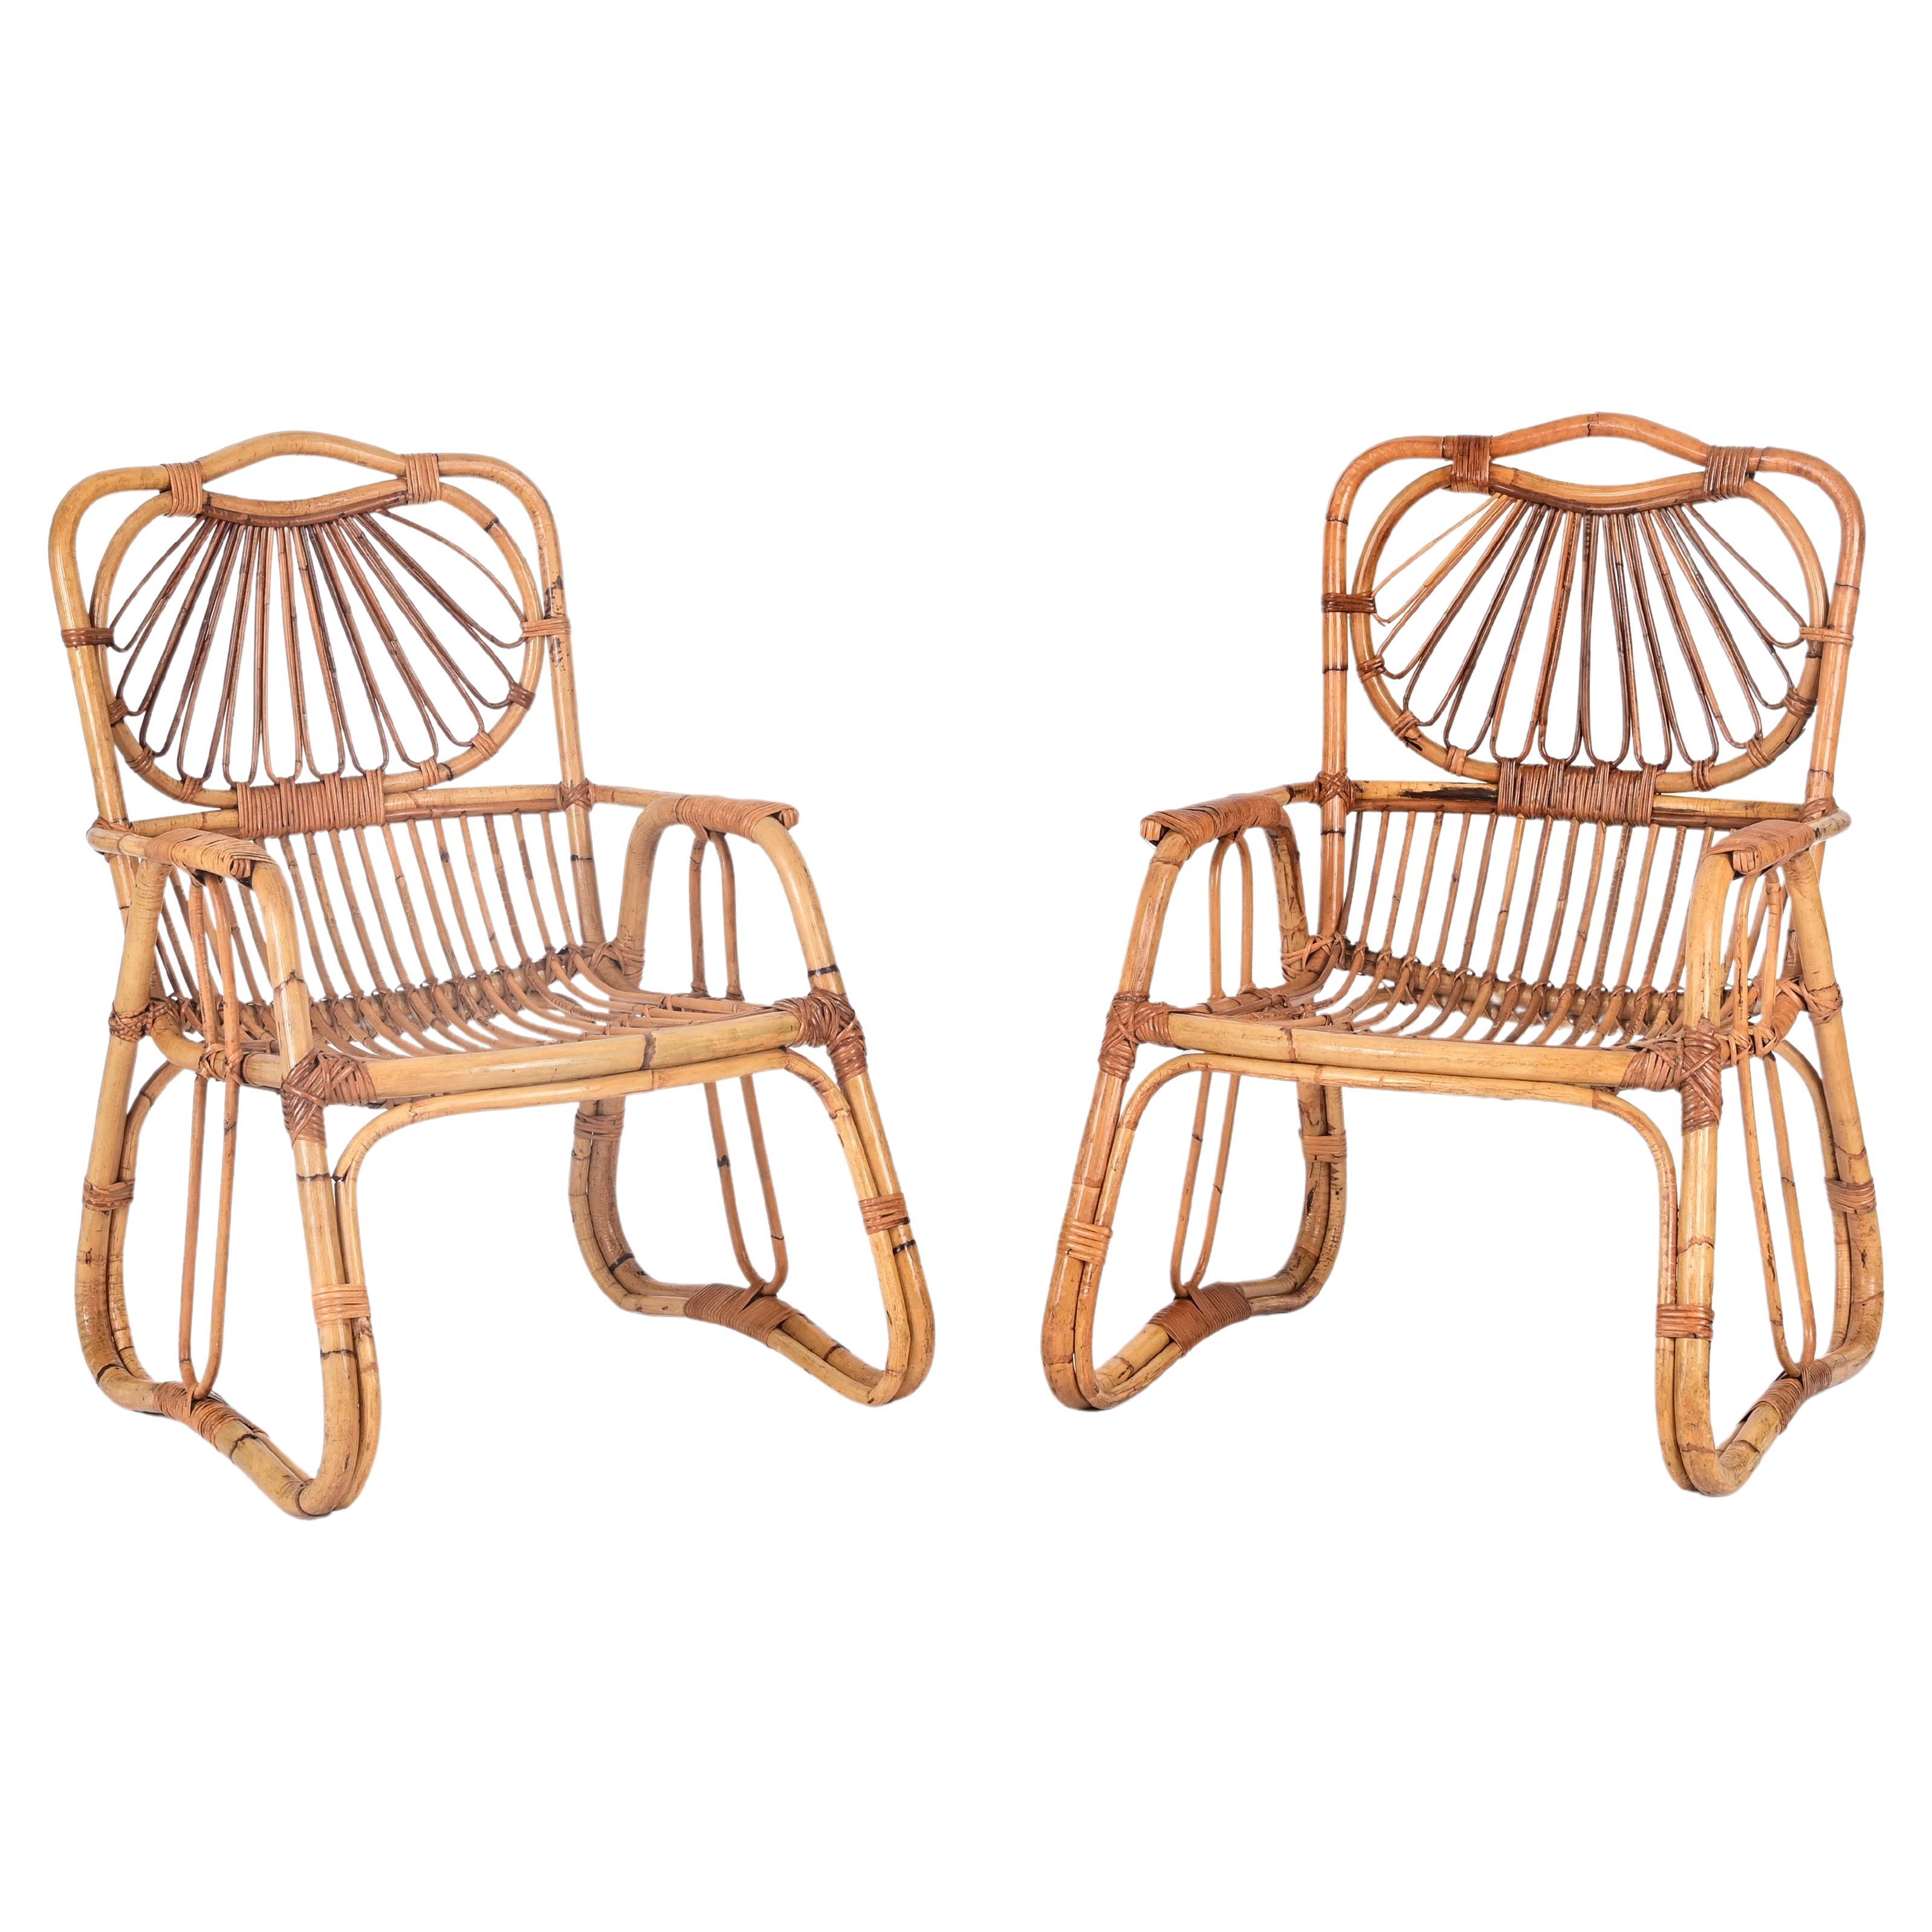 Paire de fauteuils italiens Giovanni Travasa en bambou, rotin et osier, années 1960